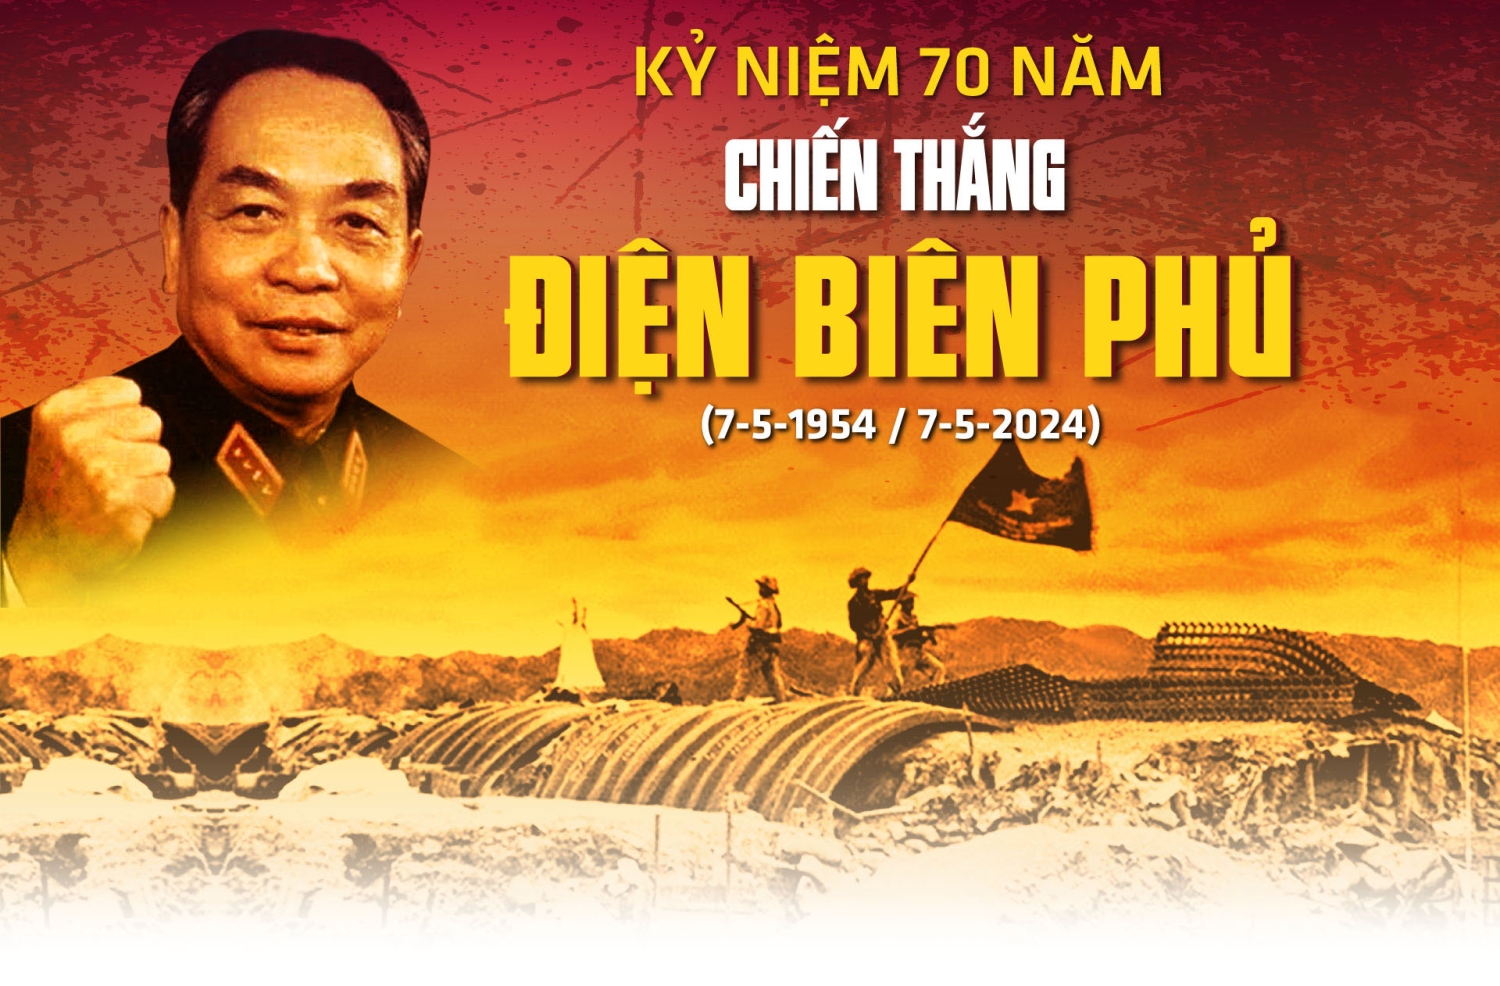 Chiến thắng Điện Biên Phủ là mốc son lịch sử của dân tộc